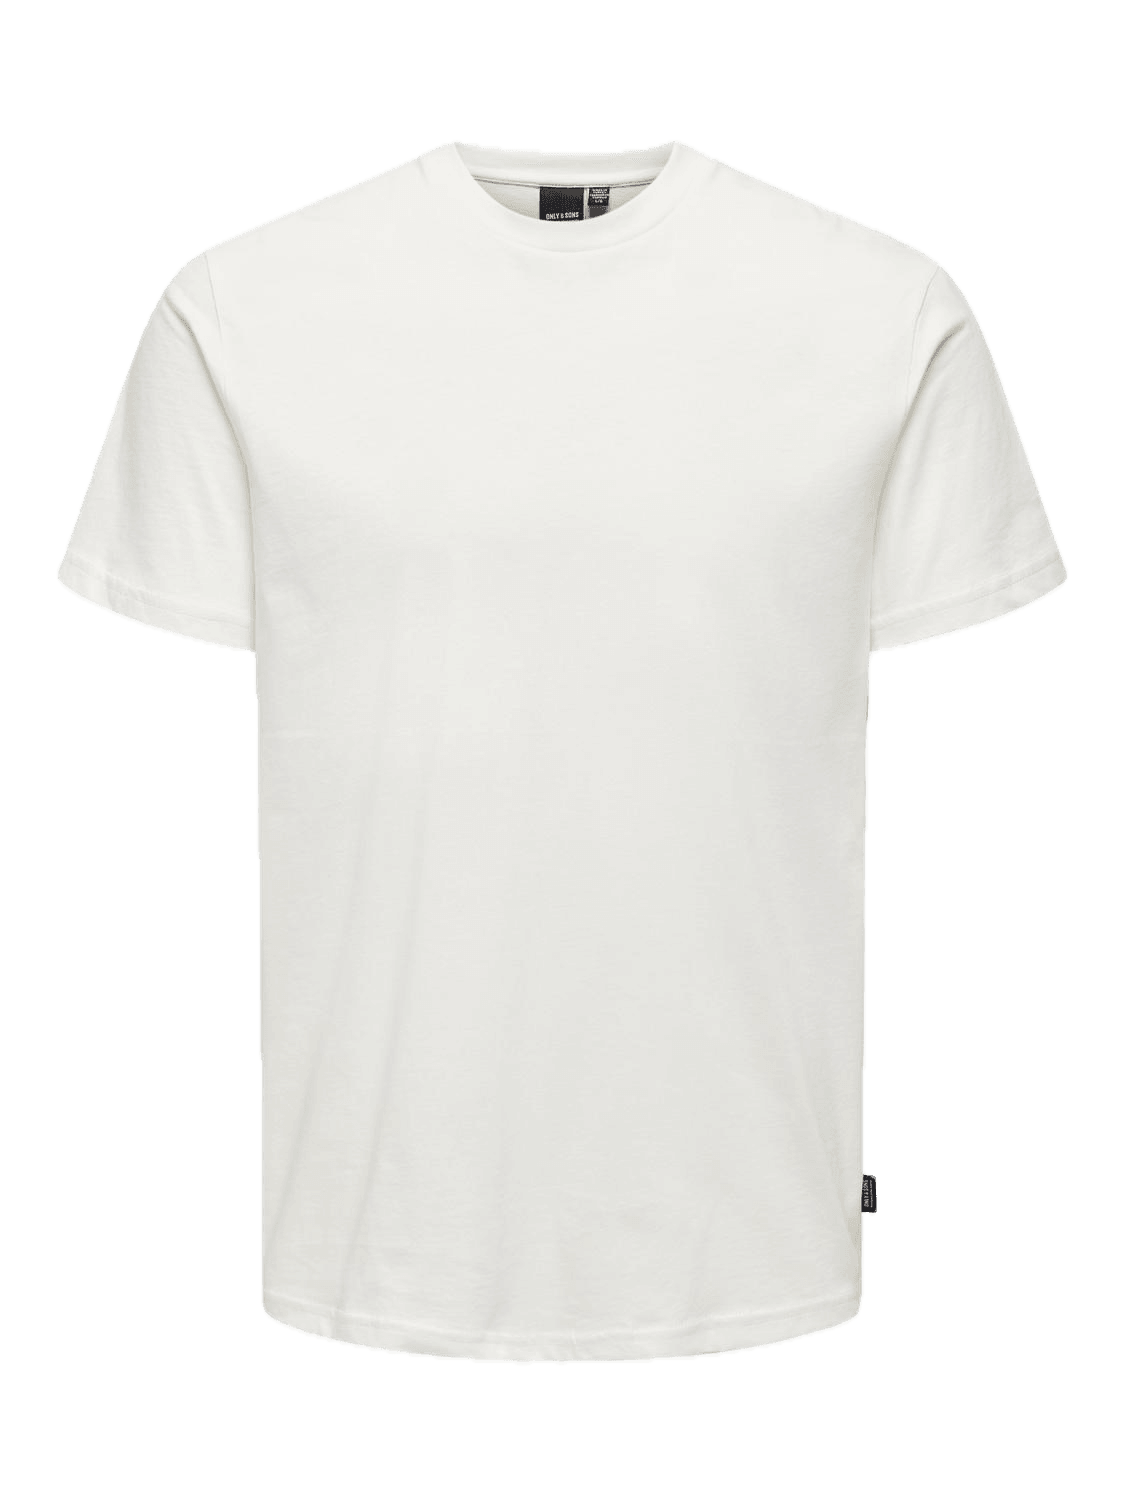 Camiseta Only&Sons Motob Life White - ECRU